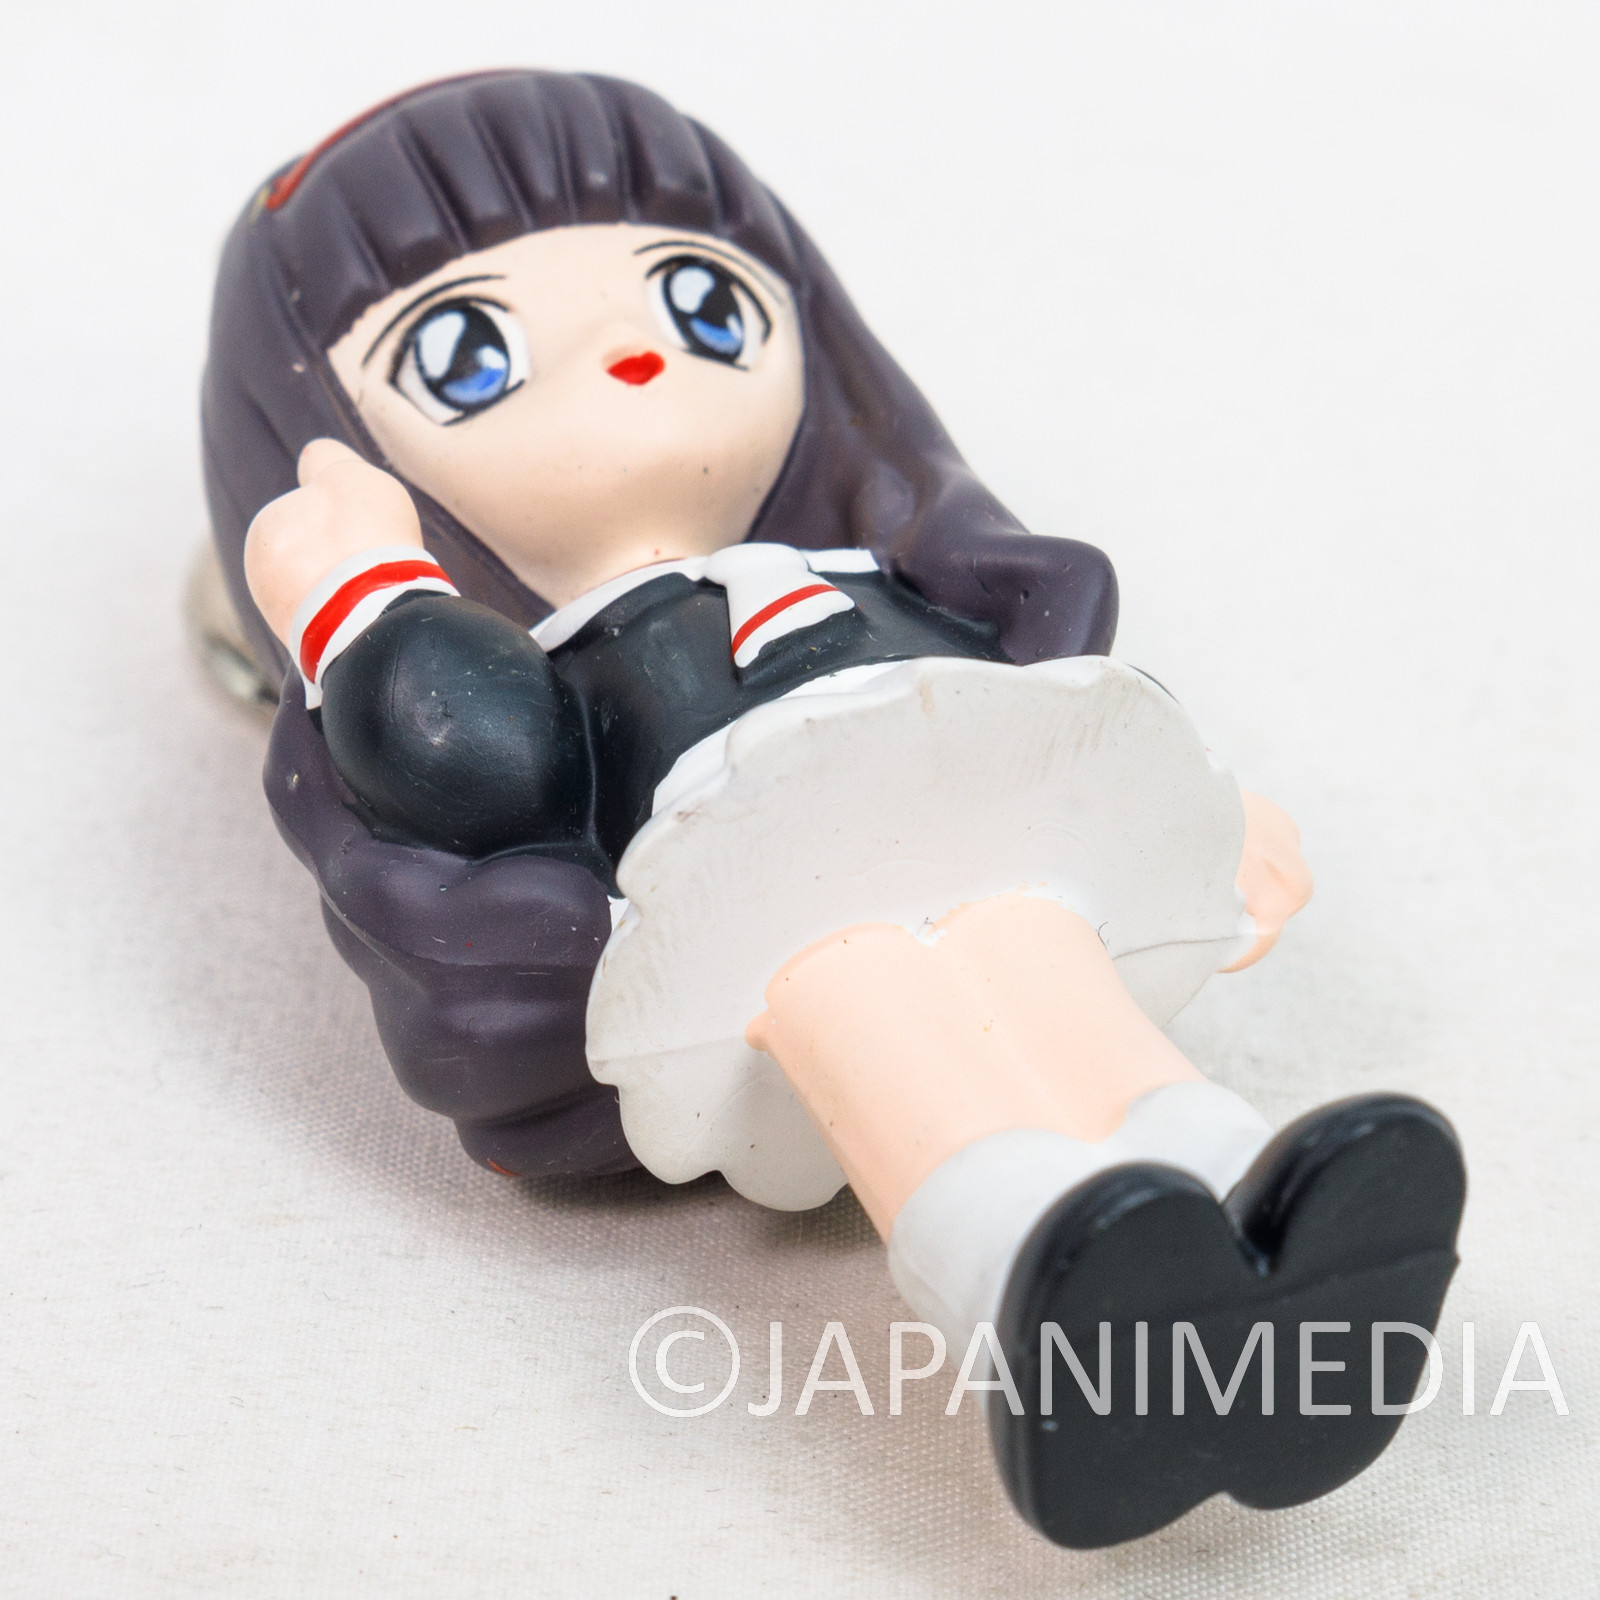 Cardcaptor Sakura Tomoyo School Uniform Mascot Figure 3" Keychain CLAMP